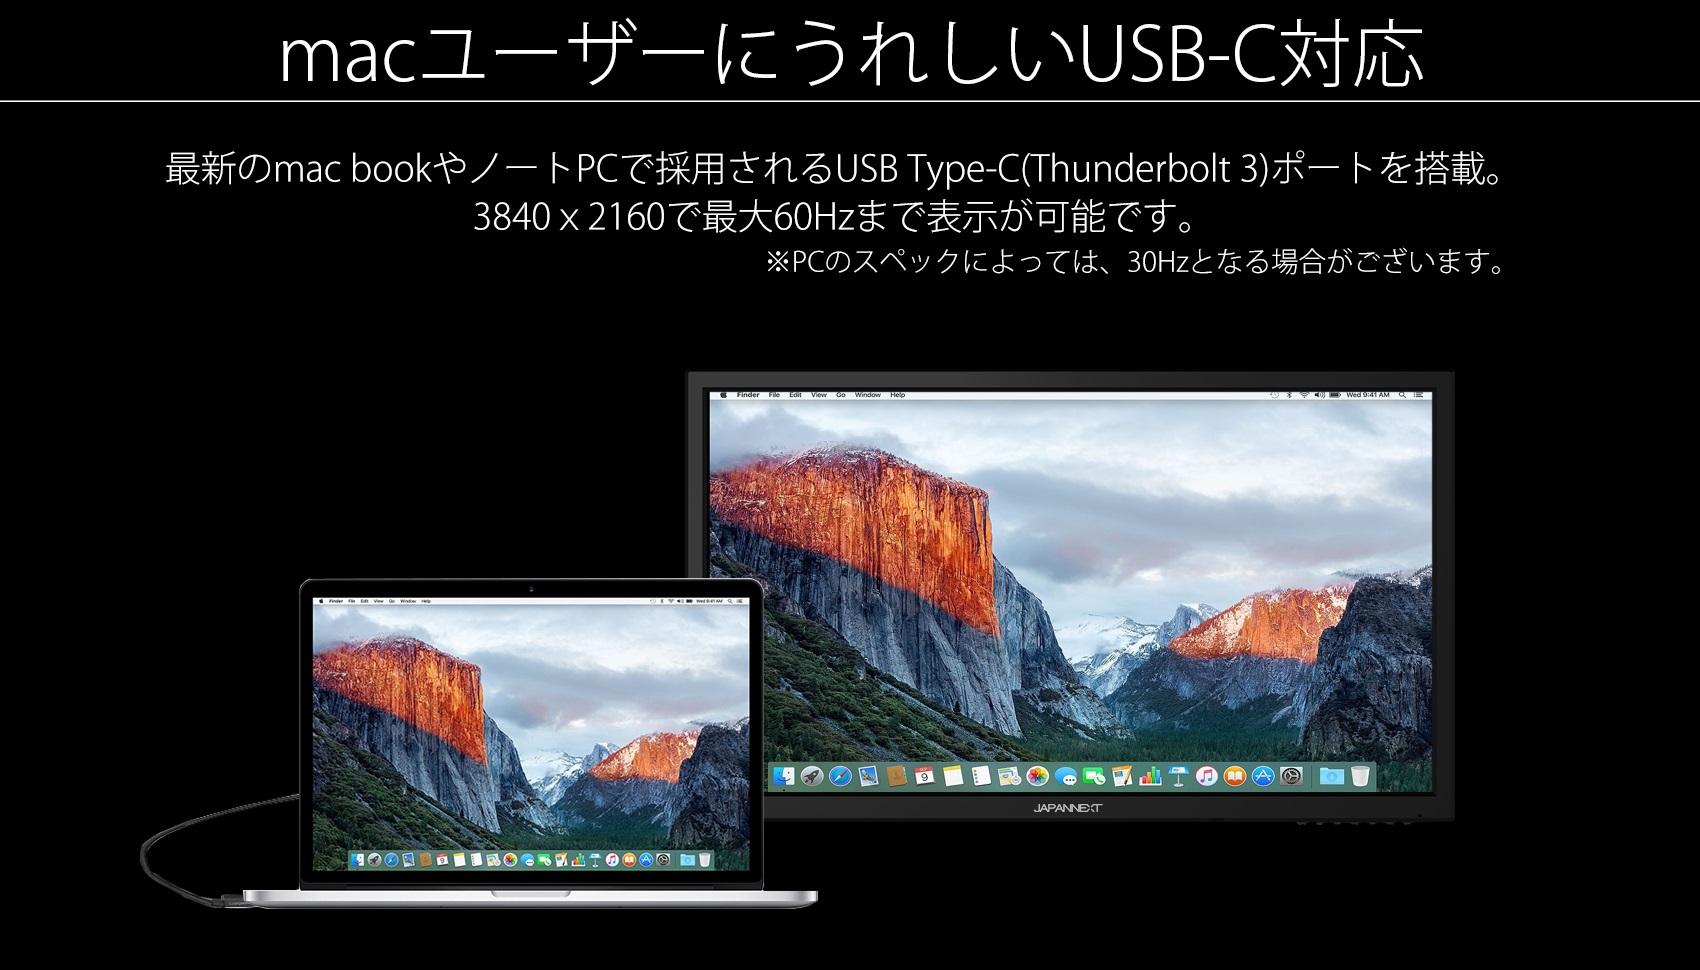 macユーザーにうれしいUSB-C対応 最新のmac bookやノートPCで採用されるUSB Type-C(Thunderbolt 3)ポートを搭載。 3840 x2160で最大60Hzまで表示が可能です。 ※PCのスペックによっては、30Hzとなる場合がございます。